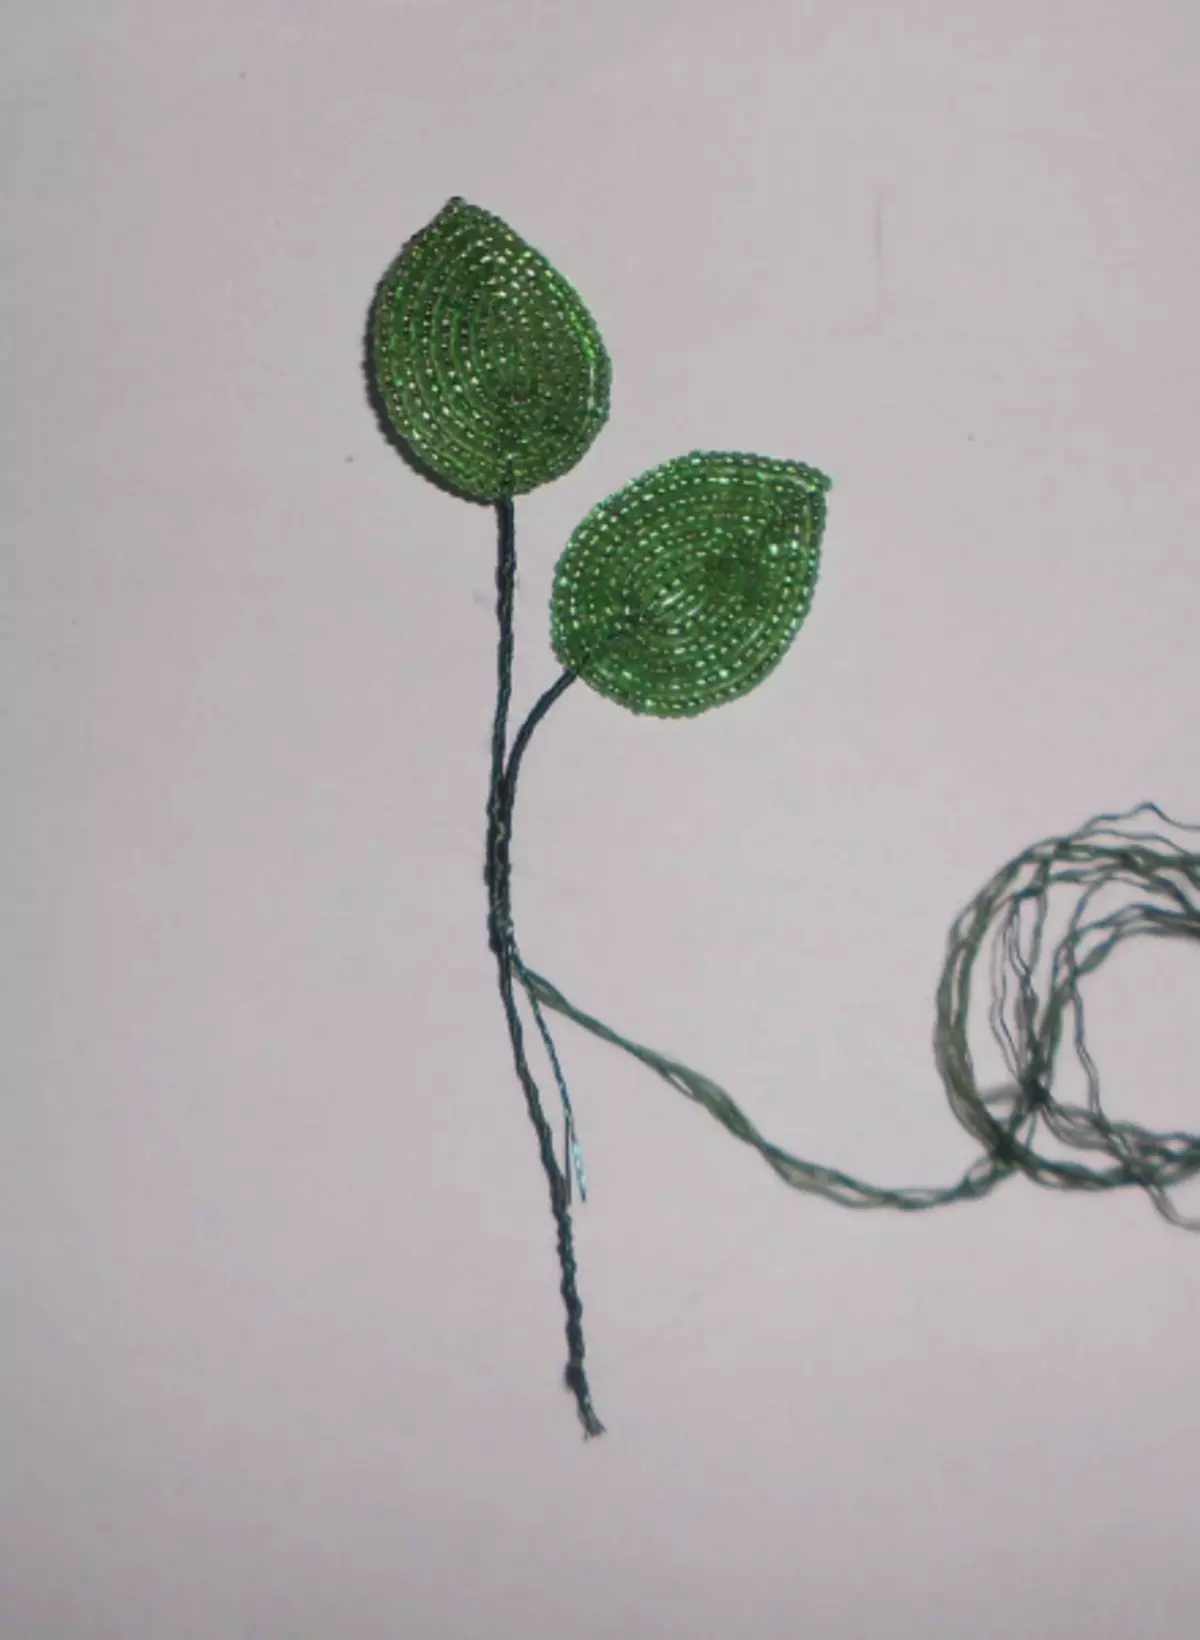 Lớp tổng thể trên hạt Lilac: Cách tạo ra một bông hoa bằng tay của chính bạn bằng một bức ảnh và video trên Dệt